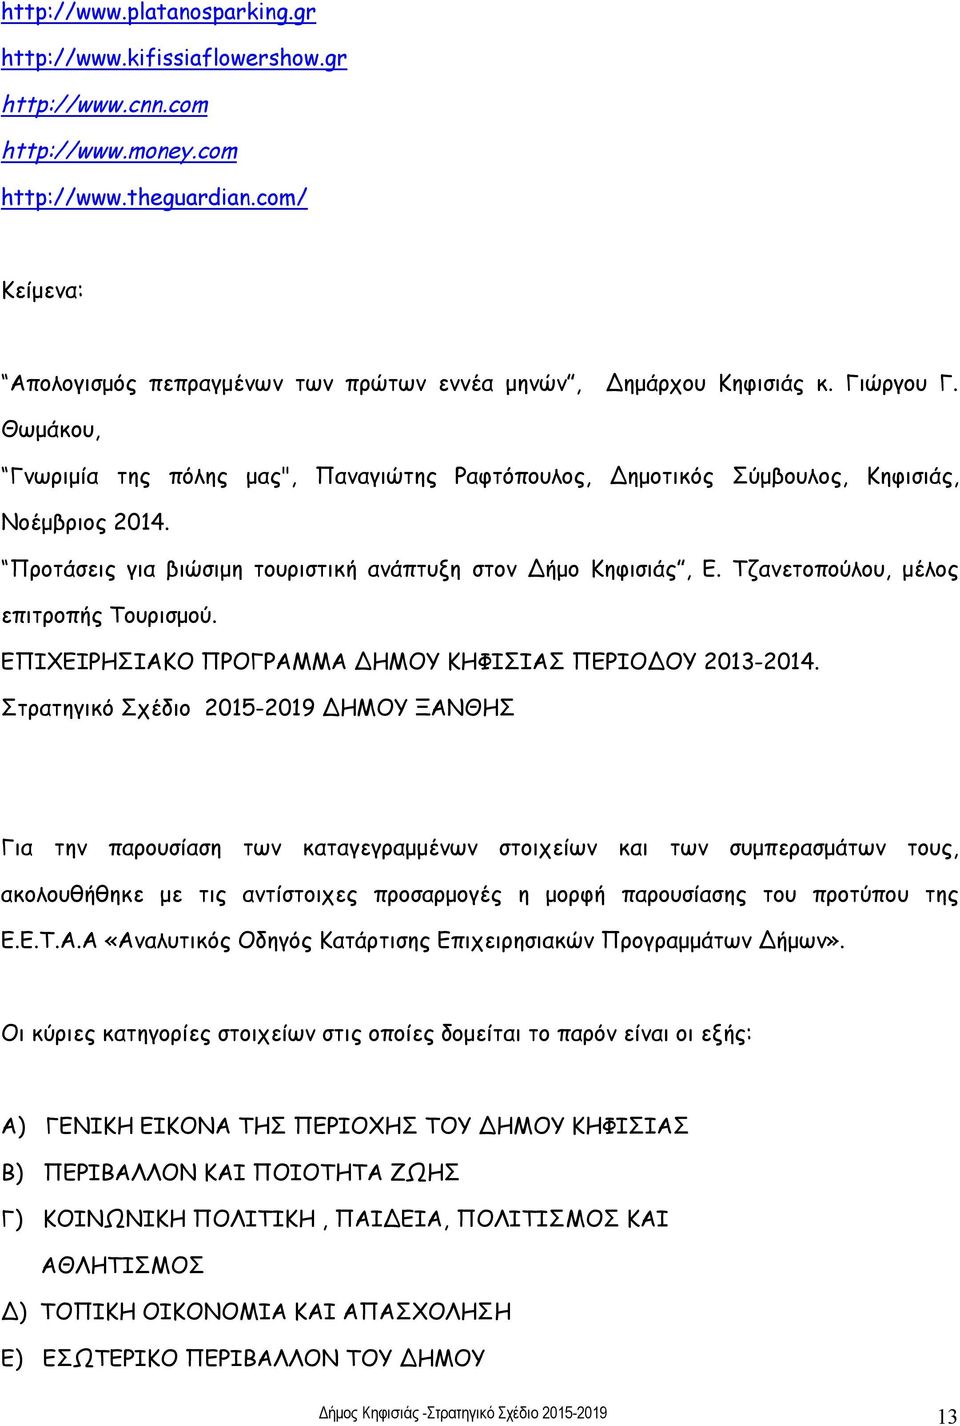 Προτάσεις για βιώσιμη τουριστική ανάπτυξη στον Δήμο Κηφισιάς, Ε. Τζανετοπούλου, μέλος επιτροπής Τουρισμού. ΕΠΙΧΕΙΡΗΣΙΑΚΟ ΠΡΟΓΡΑΜΜΑ ΔΗΜΟΥ ΚΗΦΙΣΙΑΣ ΠΕΡΙΟΔΟΥ 2013-2014.